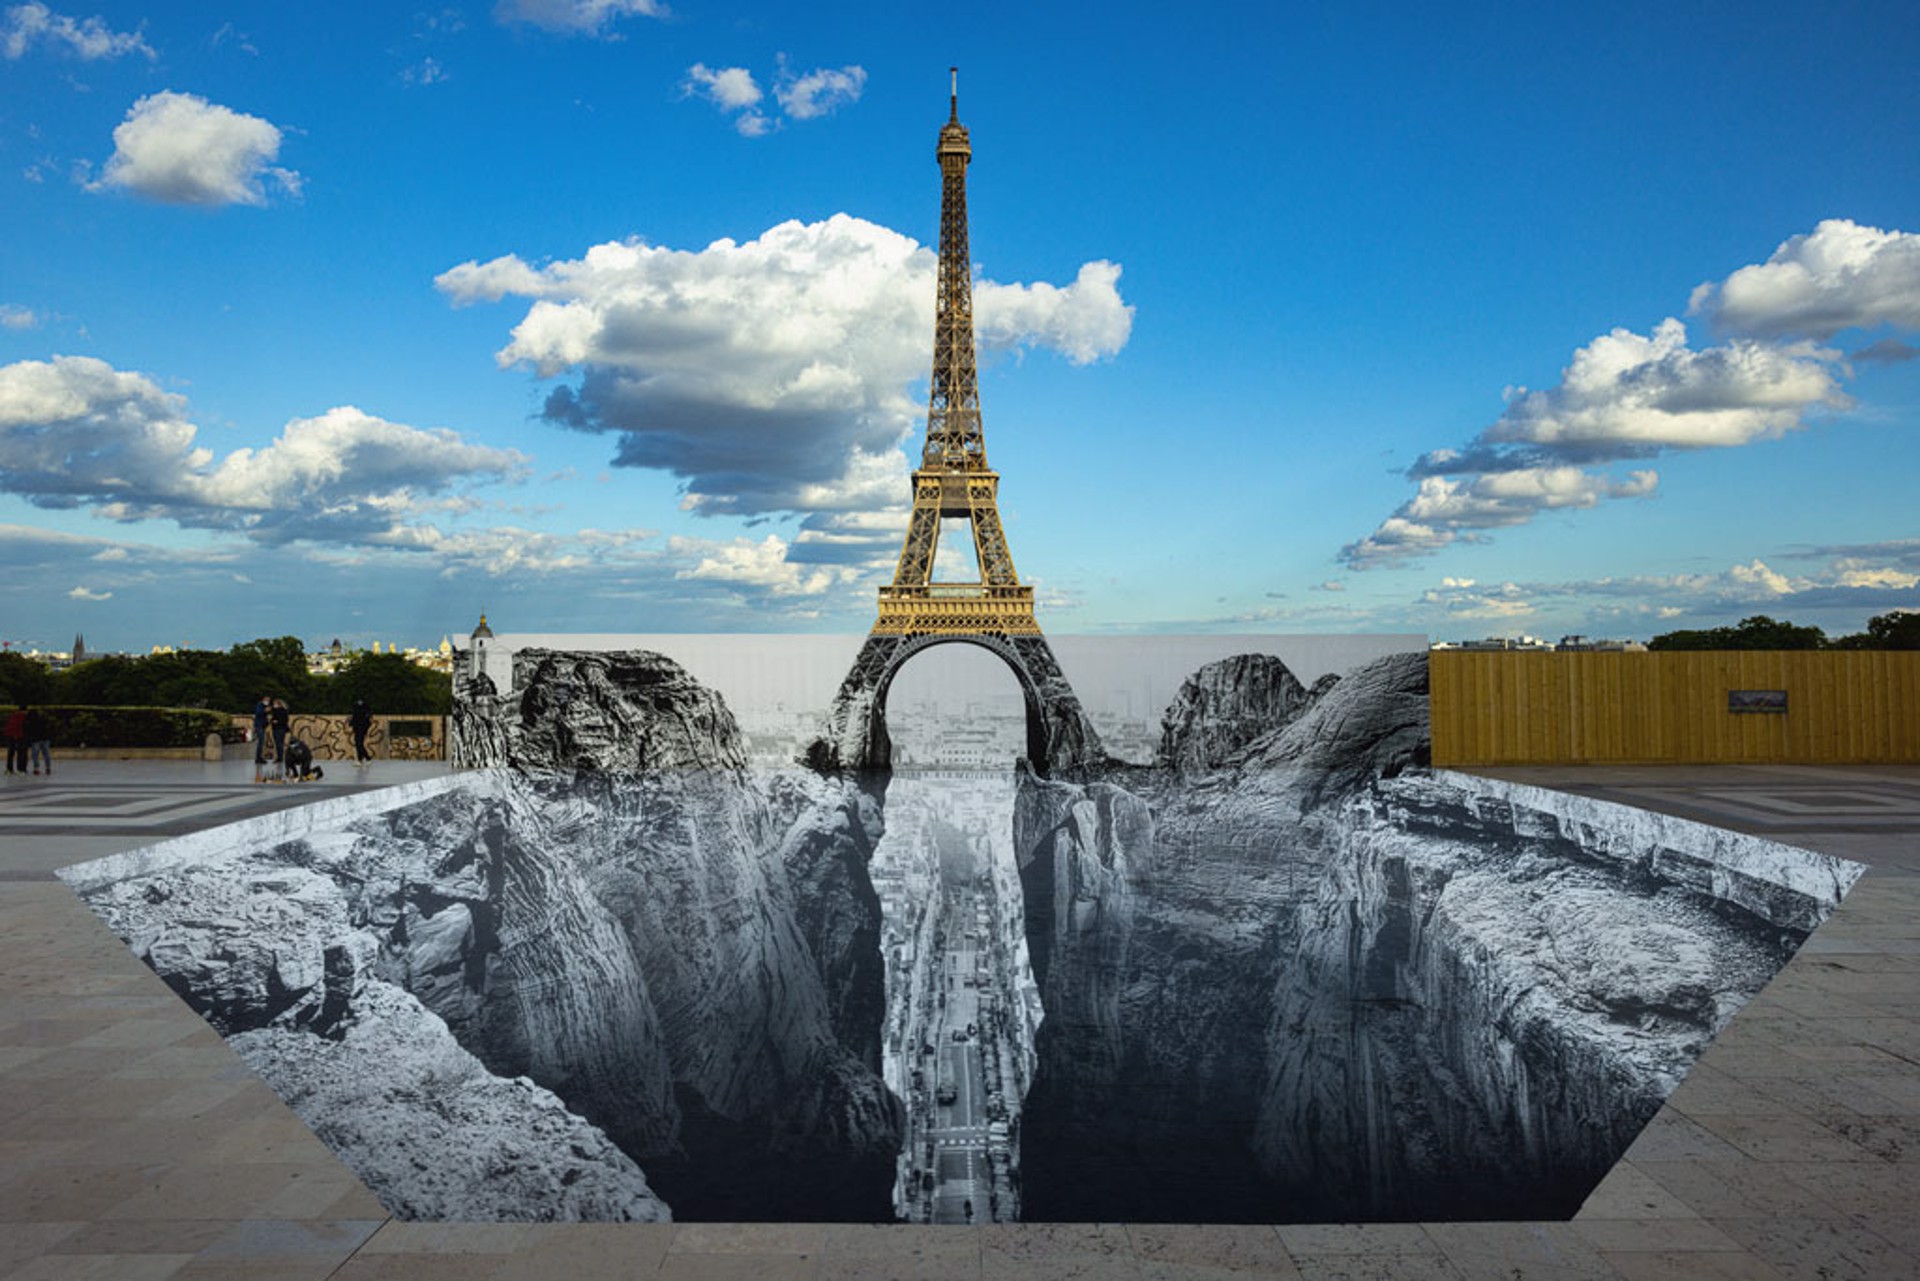 Trompe l'oeil, Les Falaises du Trocadéro, 19 mai 2021, 19h57, Paris, France, 2021 by JR